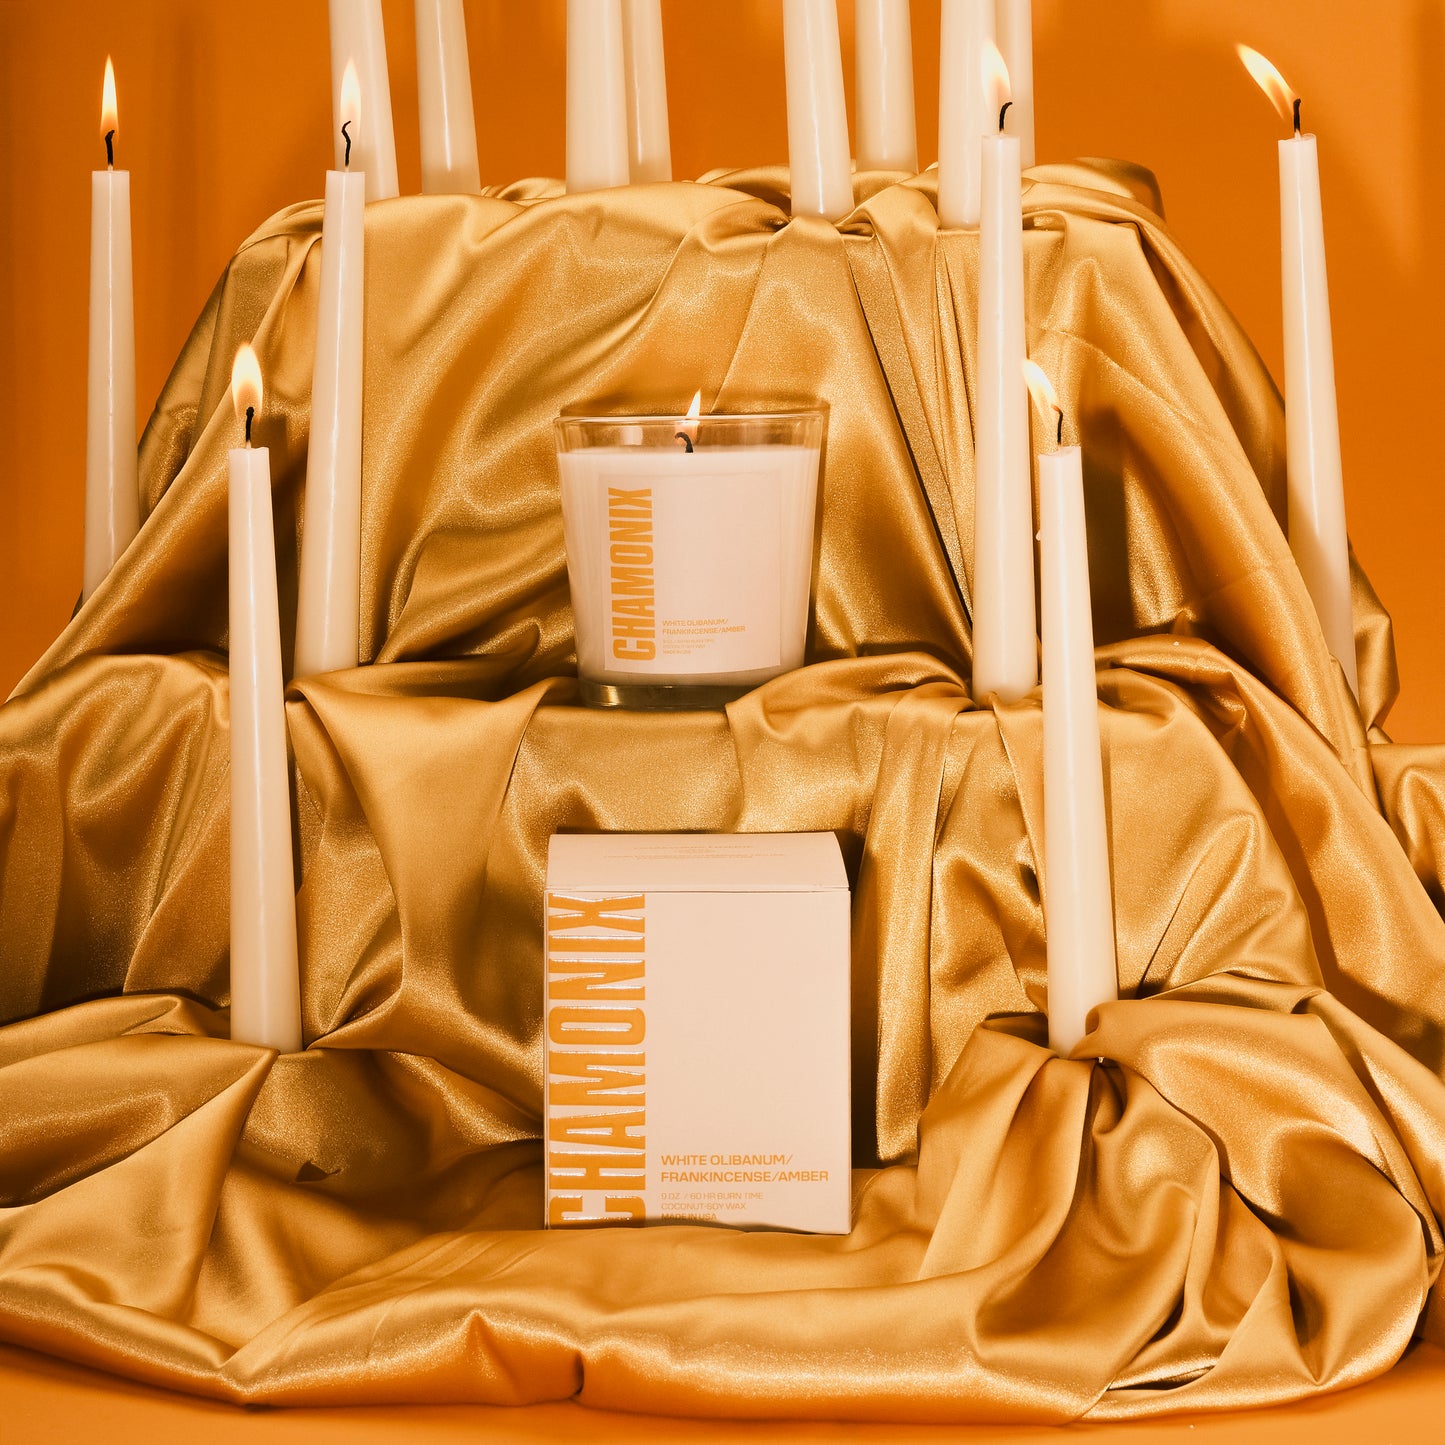 Chamonix House Candle Three - White Olibanum/Frankincense/Amber